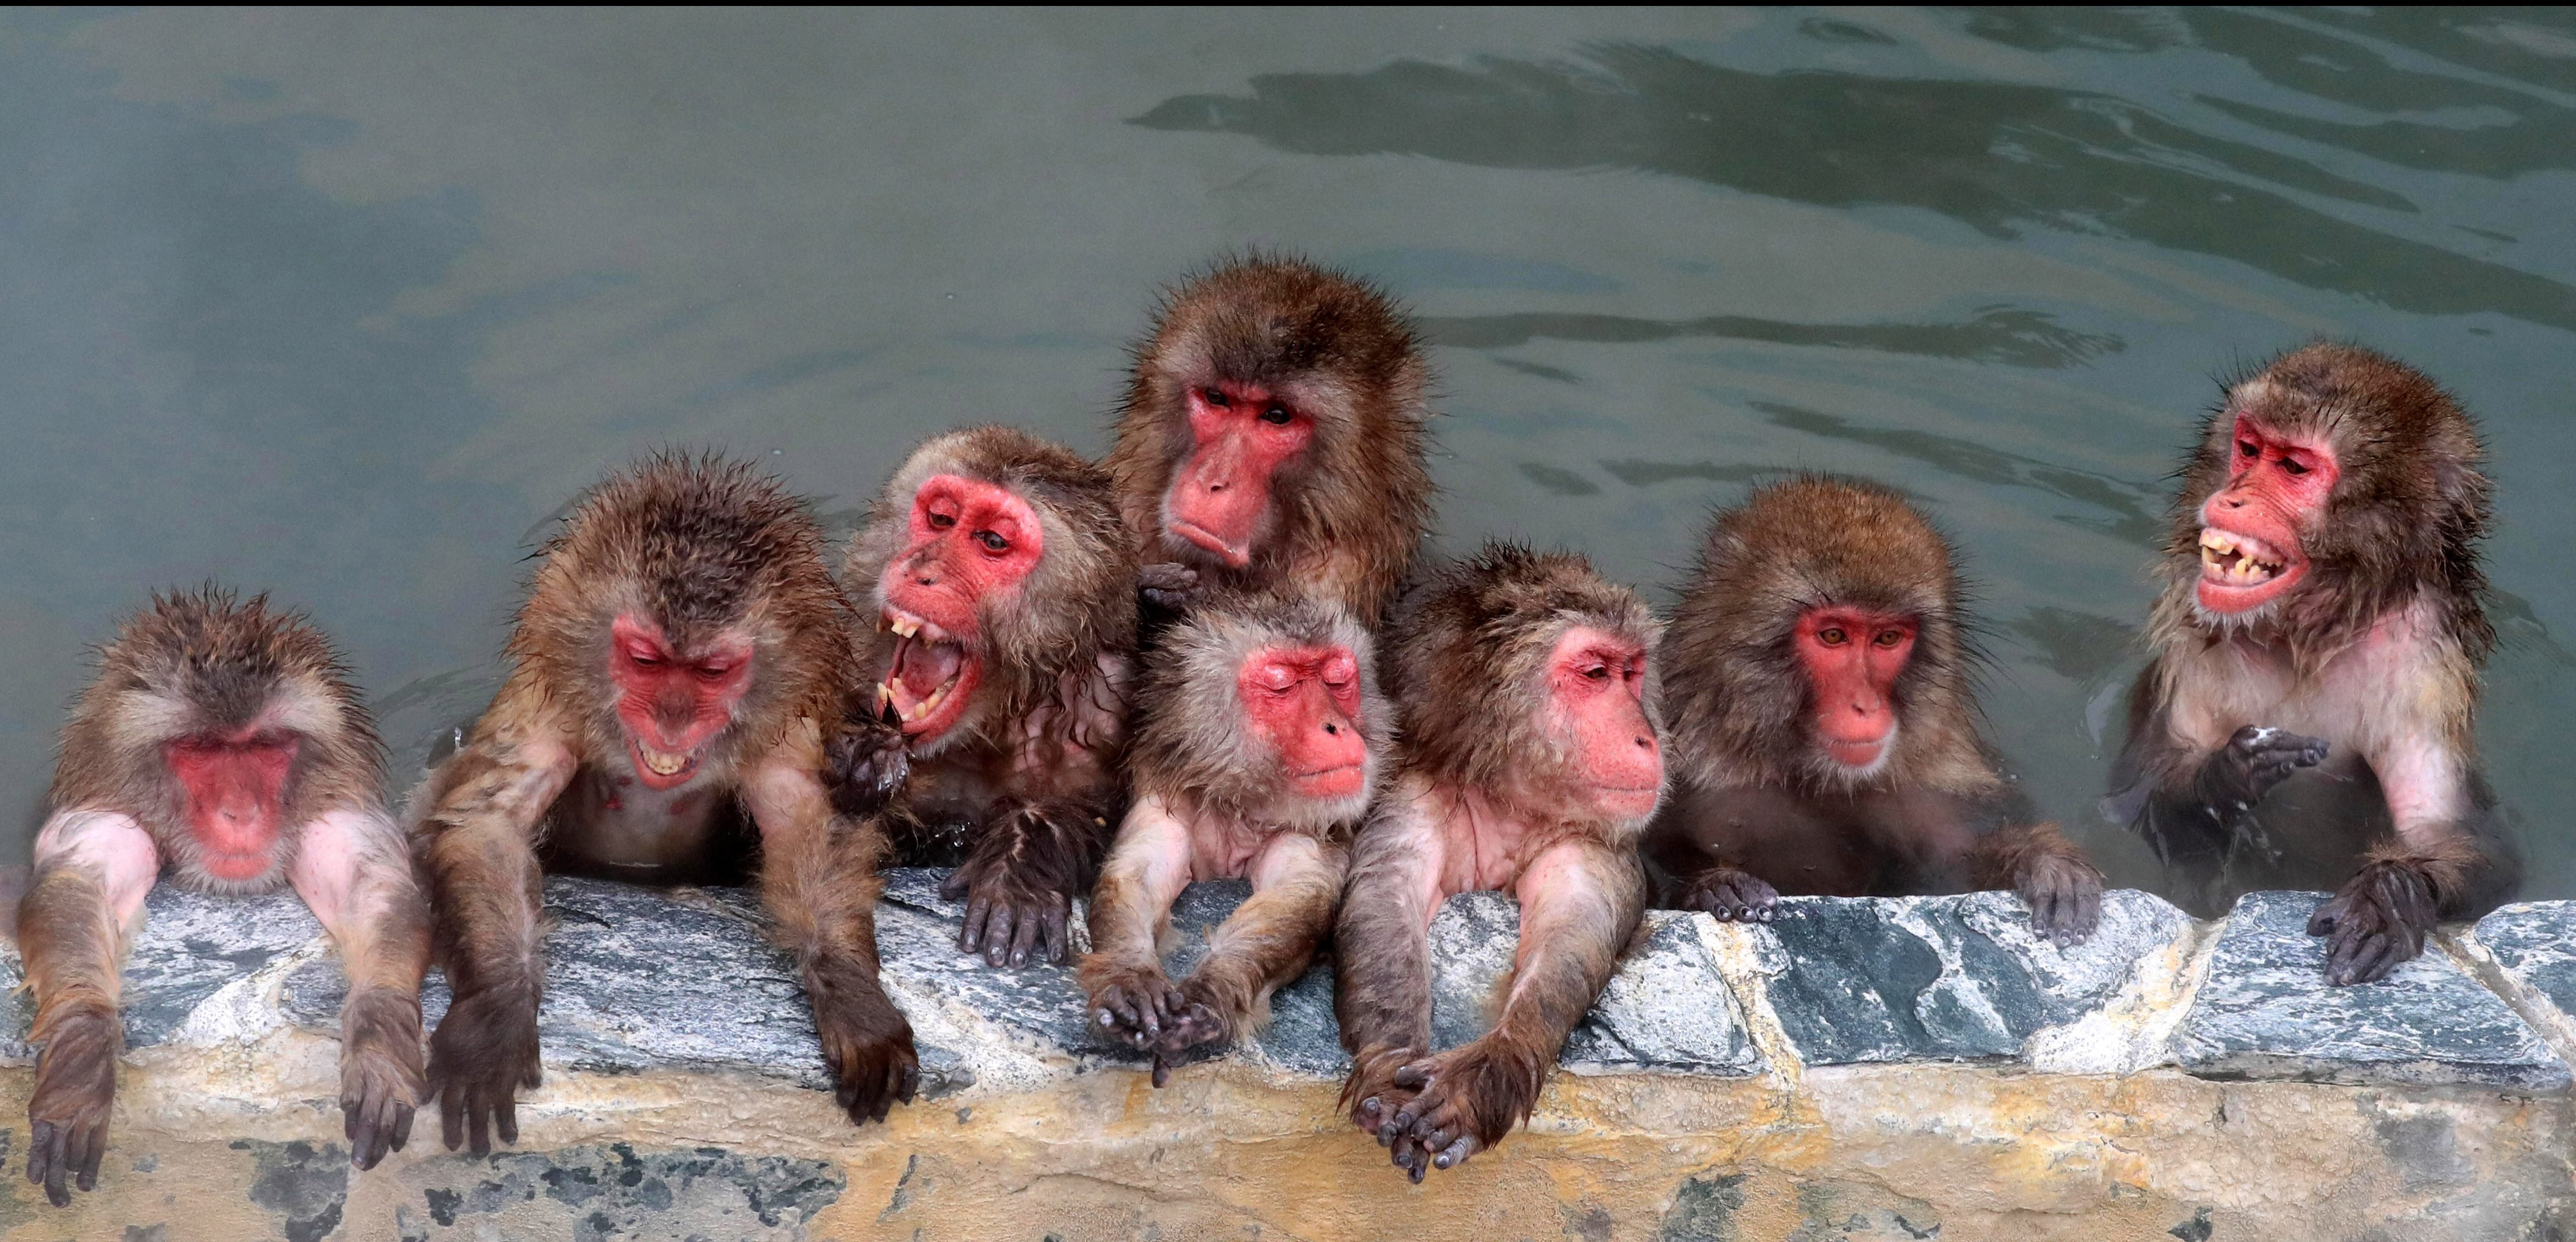 Купание обезьяны хоккей. Обезьянки купаются в горячих источниках в Японии. Обезьяны Японии нежатся в горячих источниках. Макаки острова Хоккайдо. Обезьяна в горячей воде.